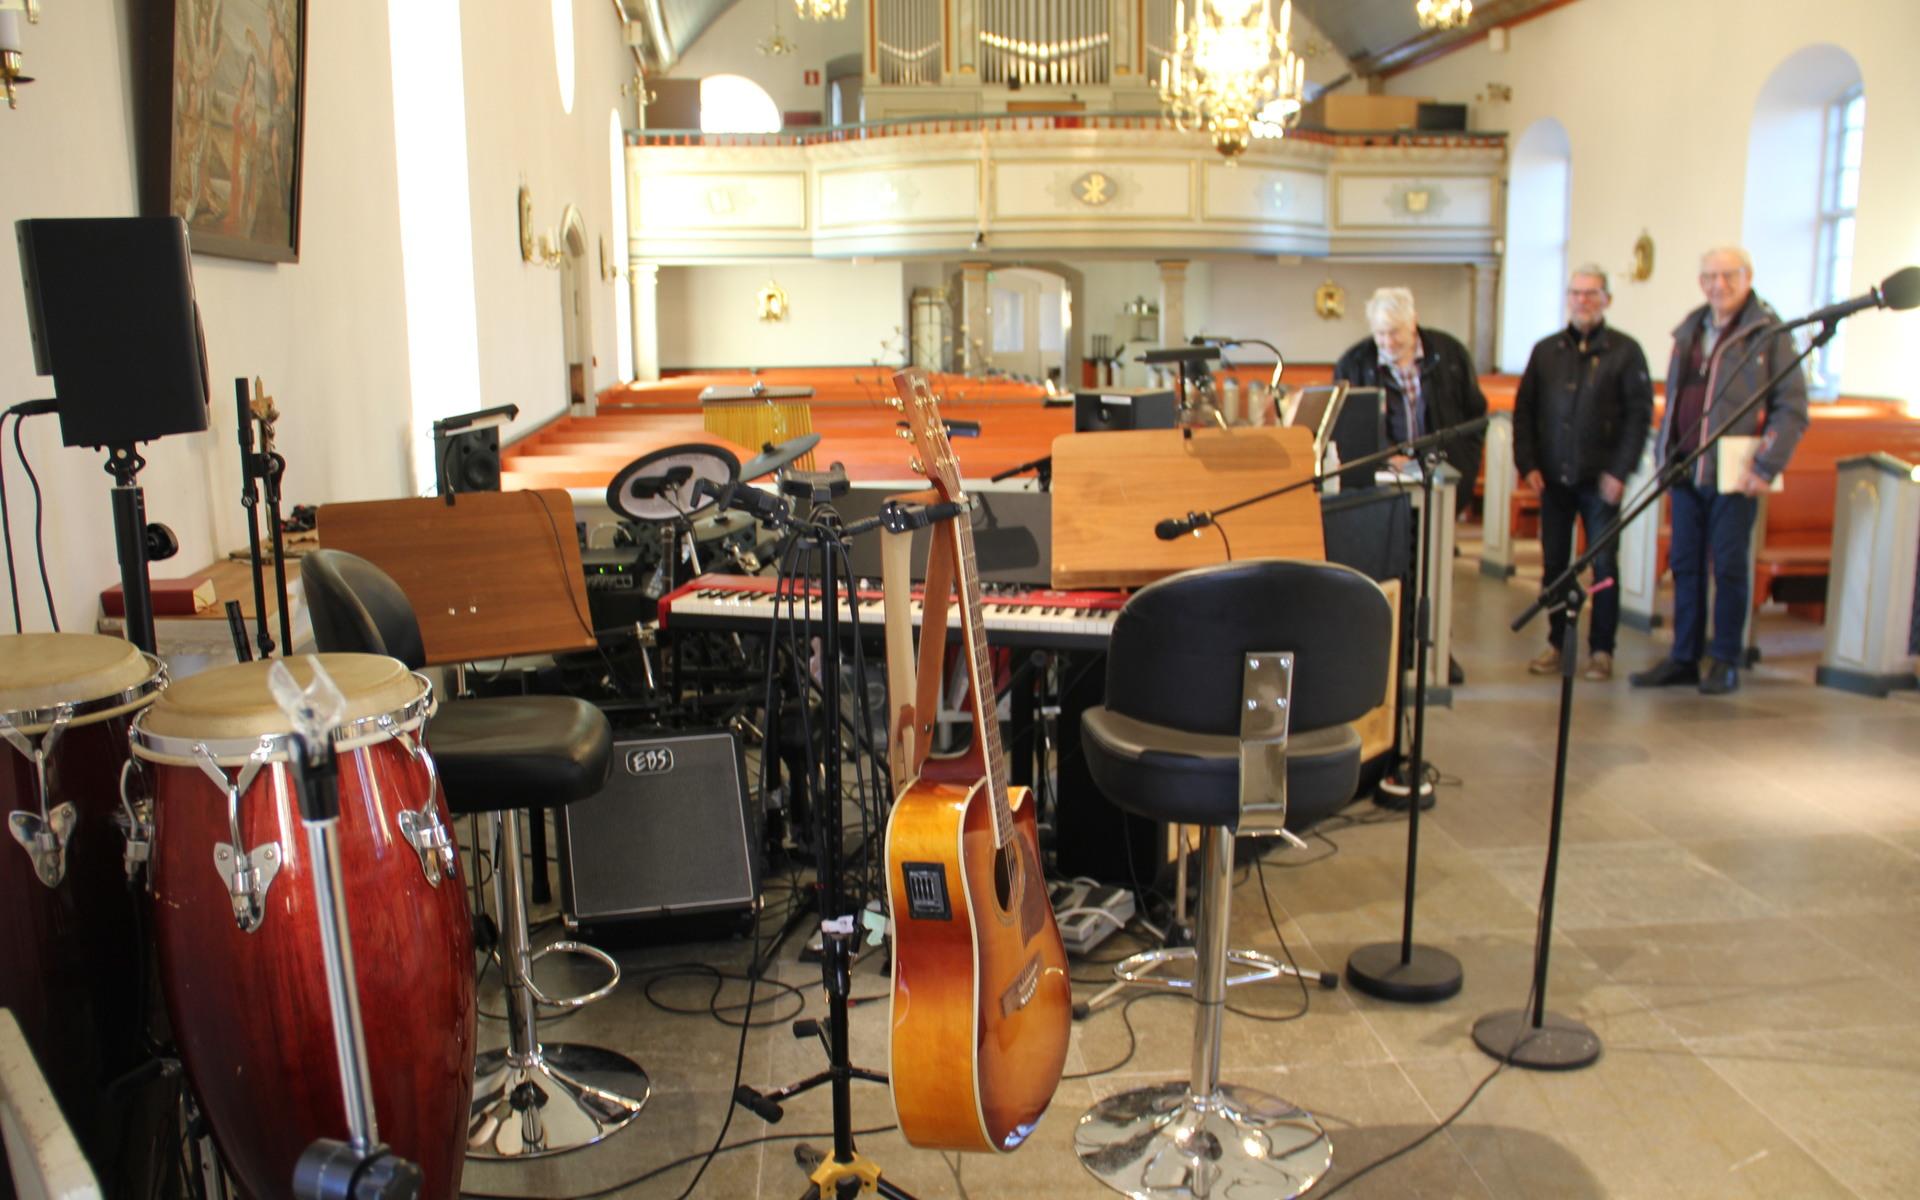 Jörlanda församling har ett aktivt musikliv, vilket alla instrumenten i kyrkan vittnar om.